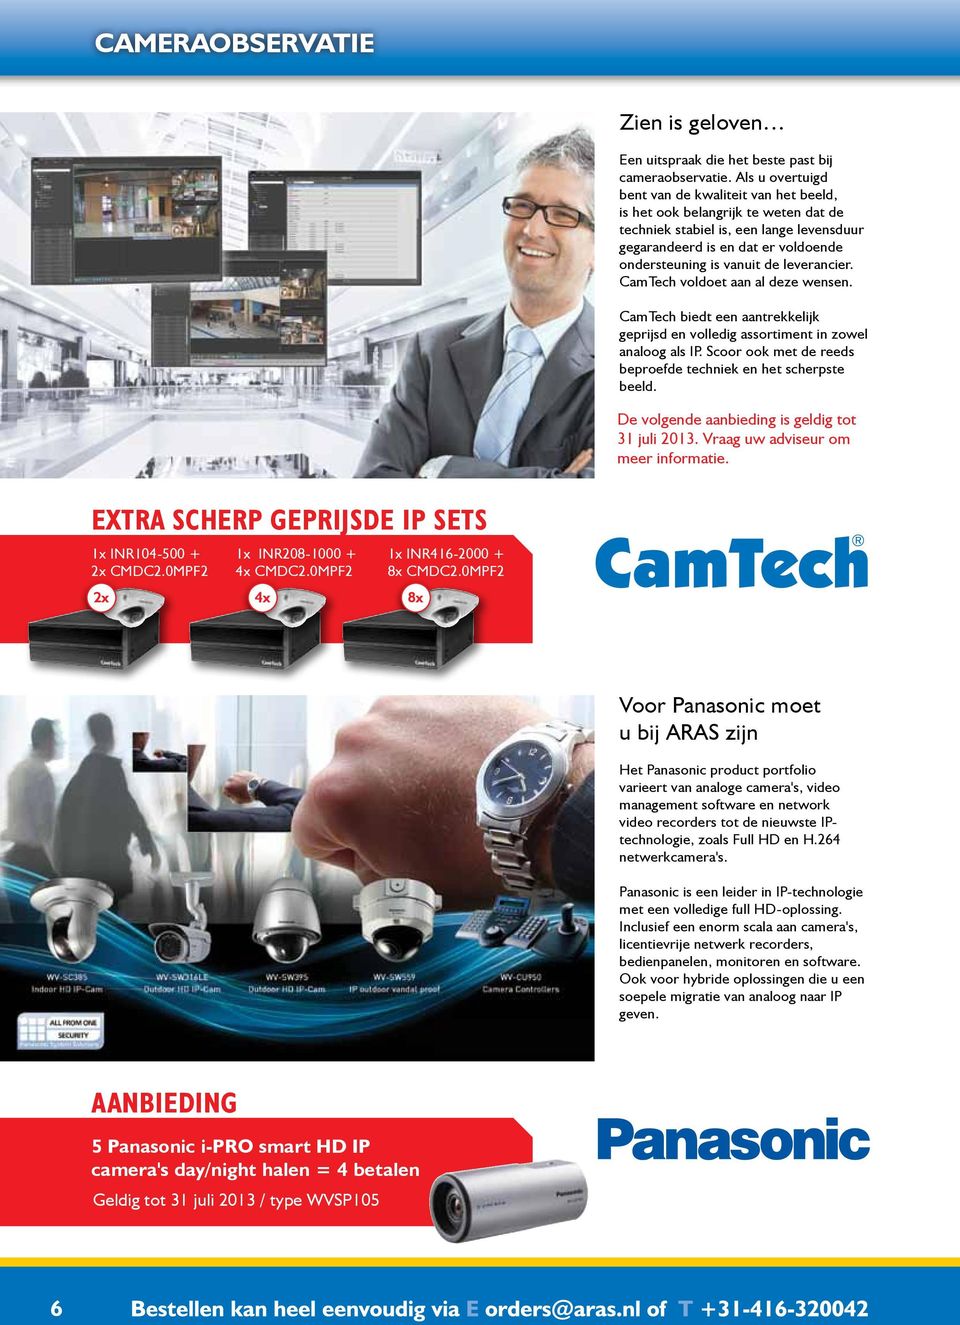 leverancier. CamTech voldoet aan al deze wensen. CamTech biedt een aantrekkelijk geprijsd en volledig assortiment in zowel analoog als IP.